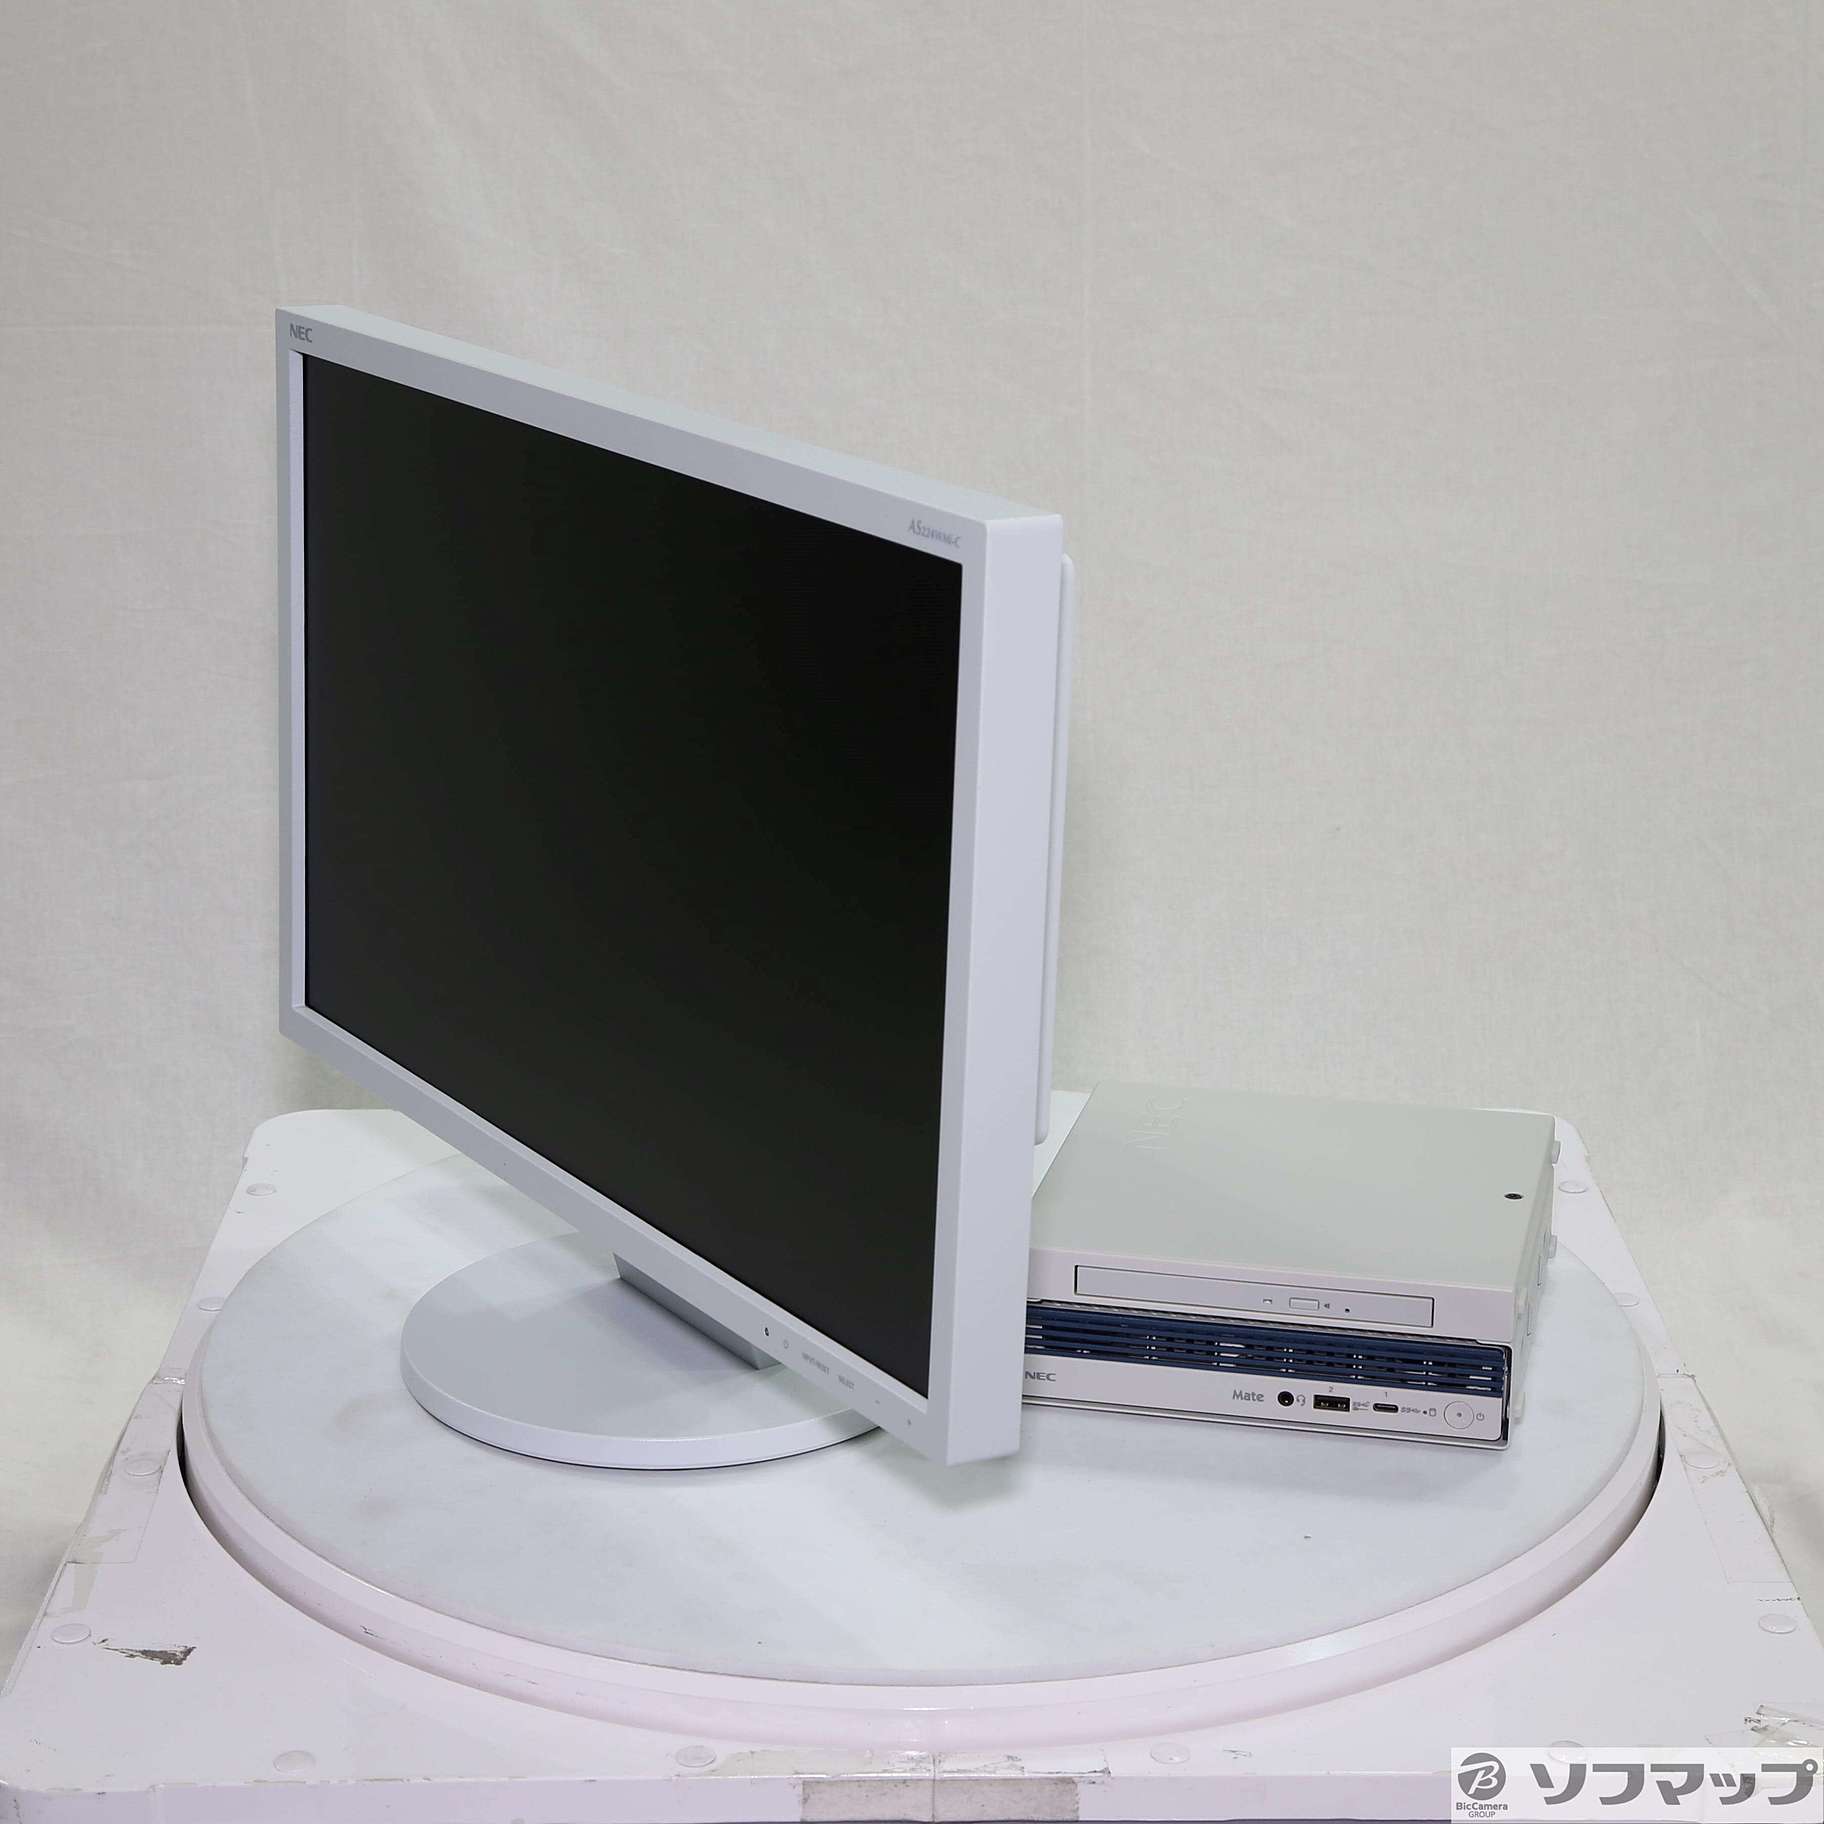 (中古)NEC Mate タイプMC PC-MKM23CZC9 (NEC Refreshed PC) (Windows 10) ≪メーカー保証あり≫(368-ud)